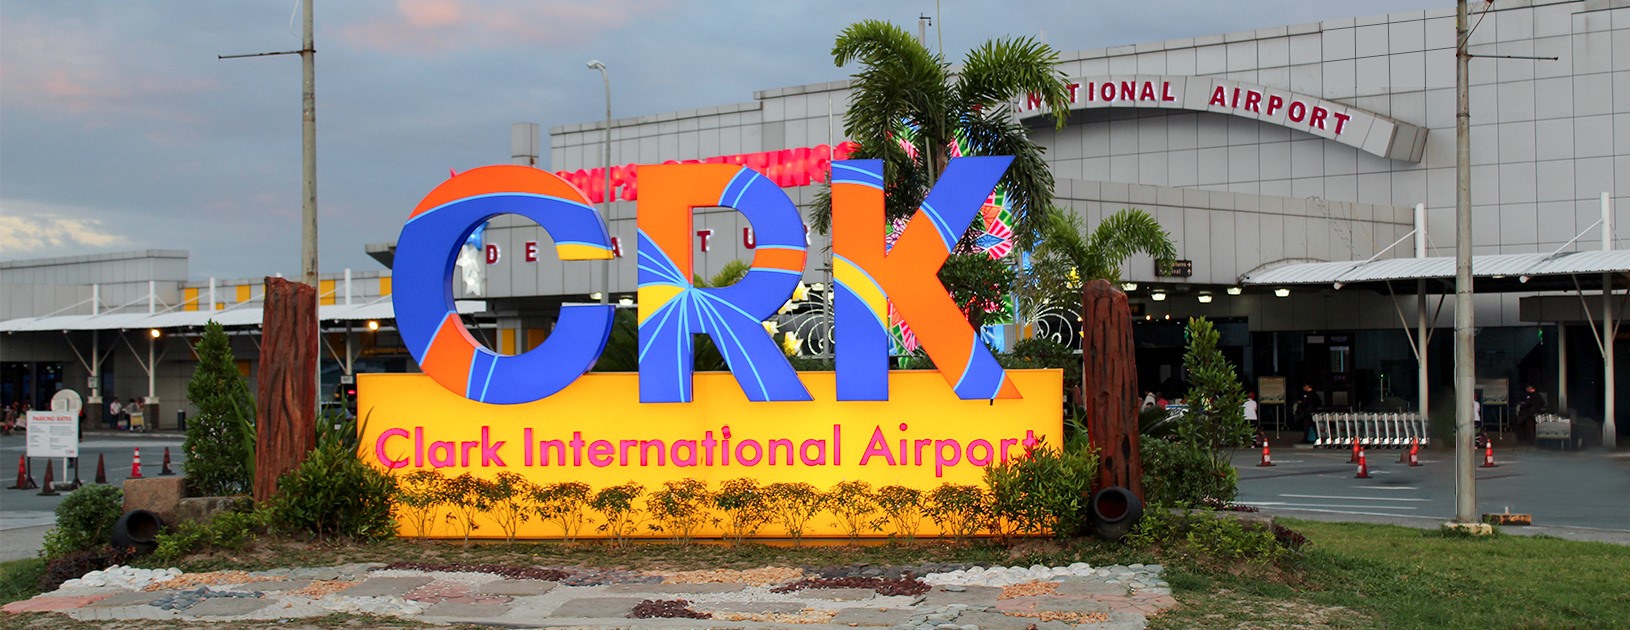 clark international airport jobs off 71 